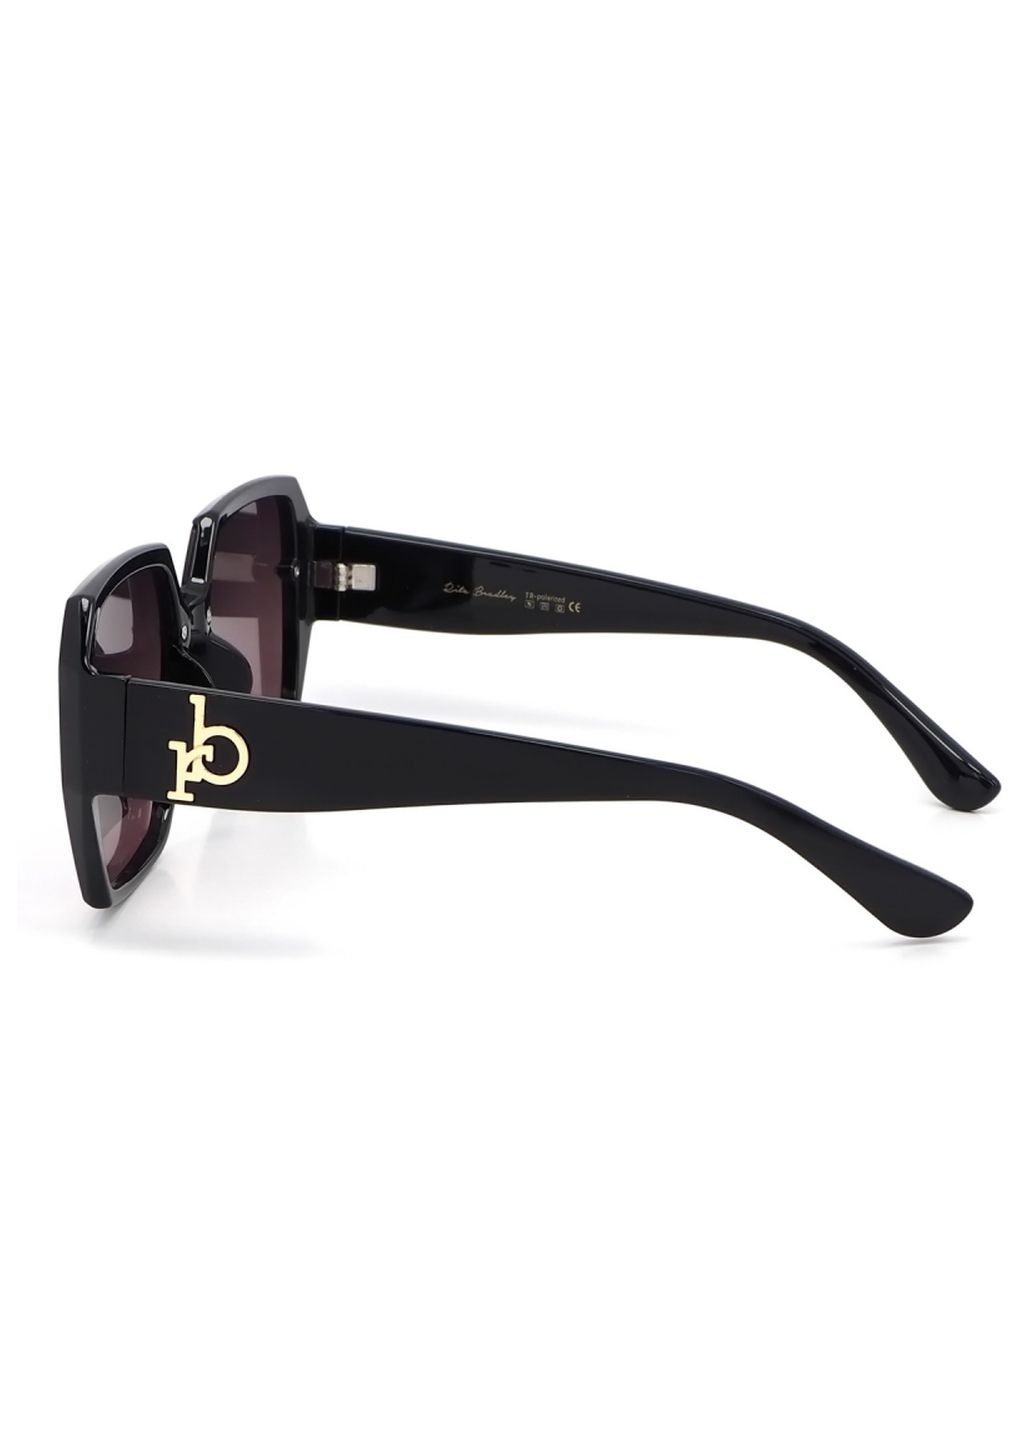 Купить Женские солнцезащитные очки Rita Bradley с поляризацией RB722 112033 в интернет-магазине